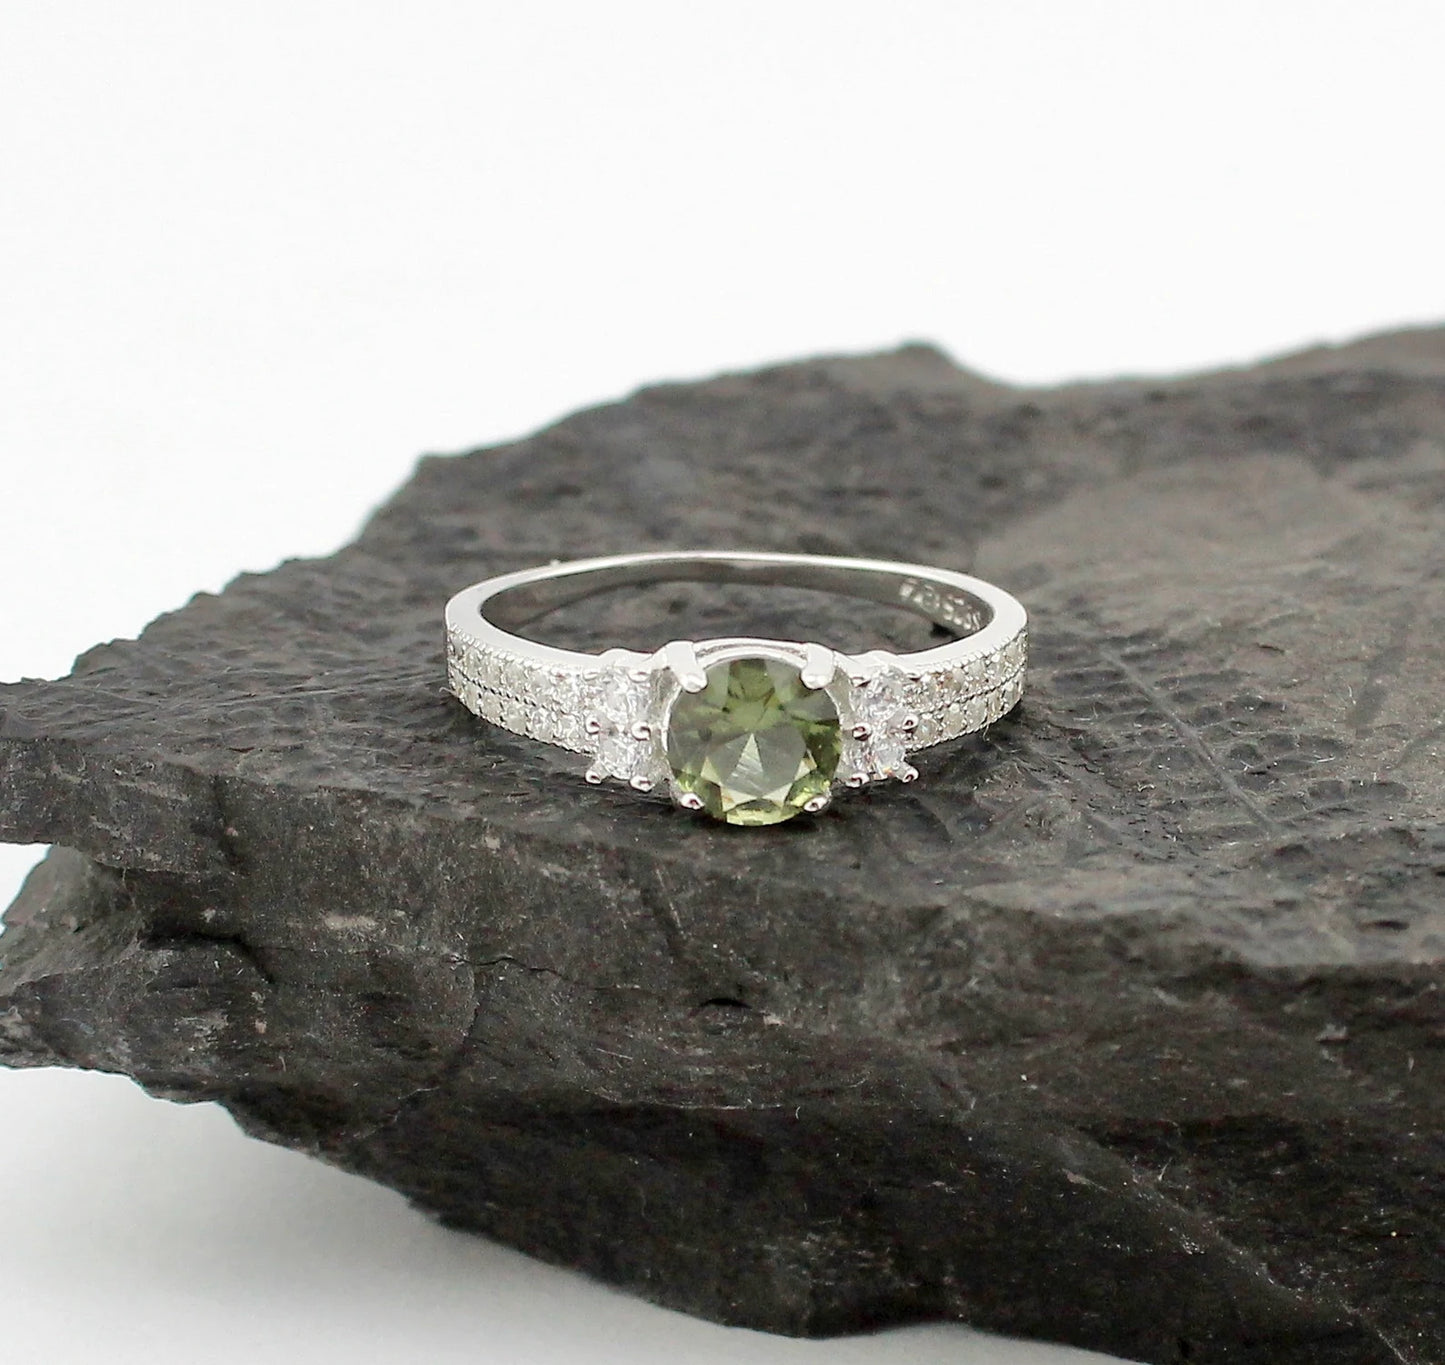 Genuine moldavite ring 6mm stone, real Moldavite ring Silver, Czech moldavite ring with certificate Moldavite jewelry Moldavite wedding ring